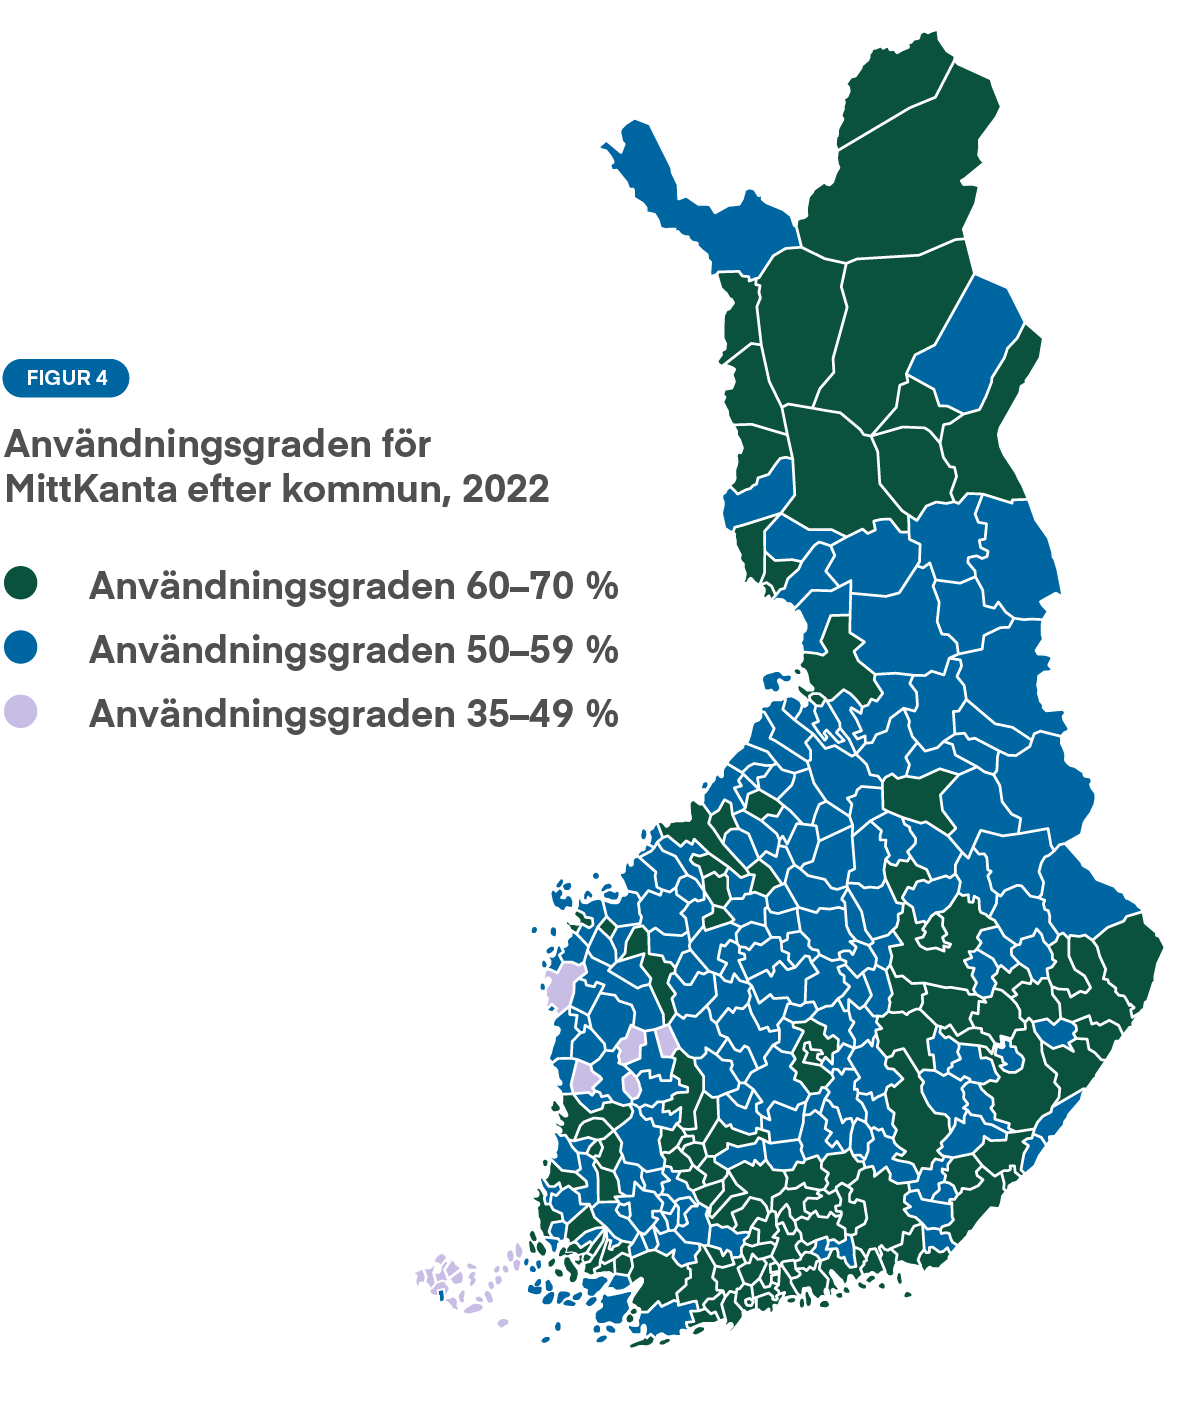 Graf: Figur 4 illustrerar utnyttjandegraden för MittKanta efter kommun 2022. MittKanta används mest i stora städer, Södra Finland och Lappland. Tjänsten används minst i Kajanaland, Mellersta Finland och Österbotten.